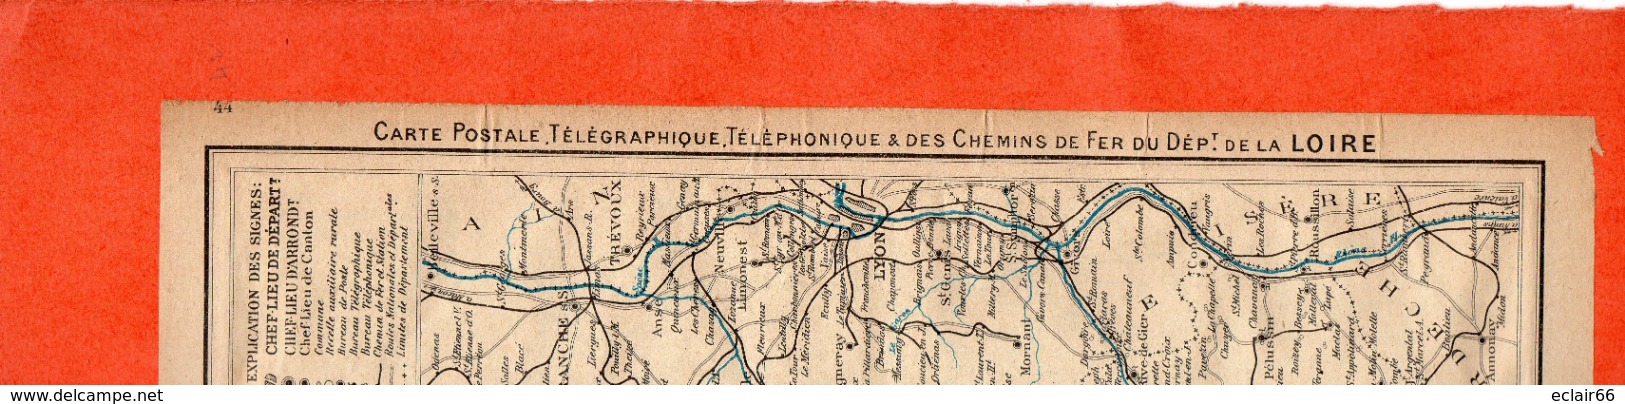 2 Cartes Télégraphique Téléphonique & Des Chemins De Fer Dépt 41 LOIR Et CHER Et42 LOIRE Année 1936 Collée Recto Verso - Europe